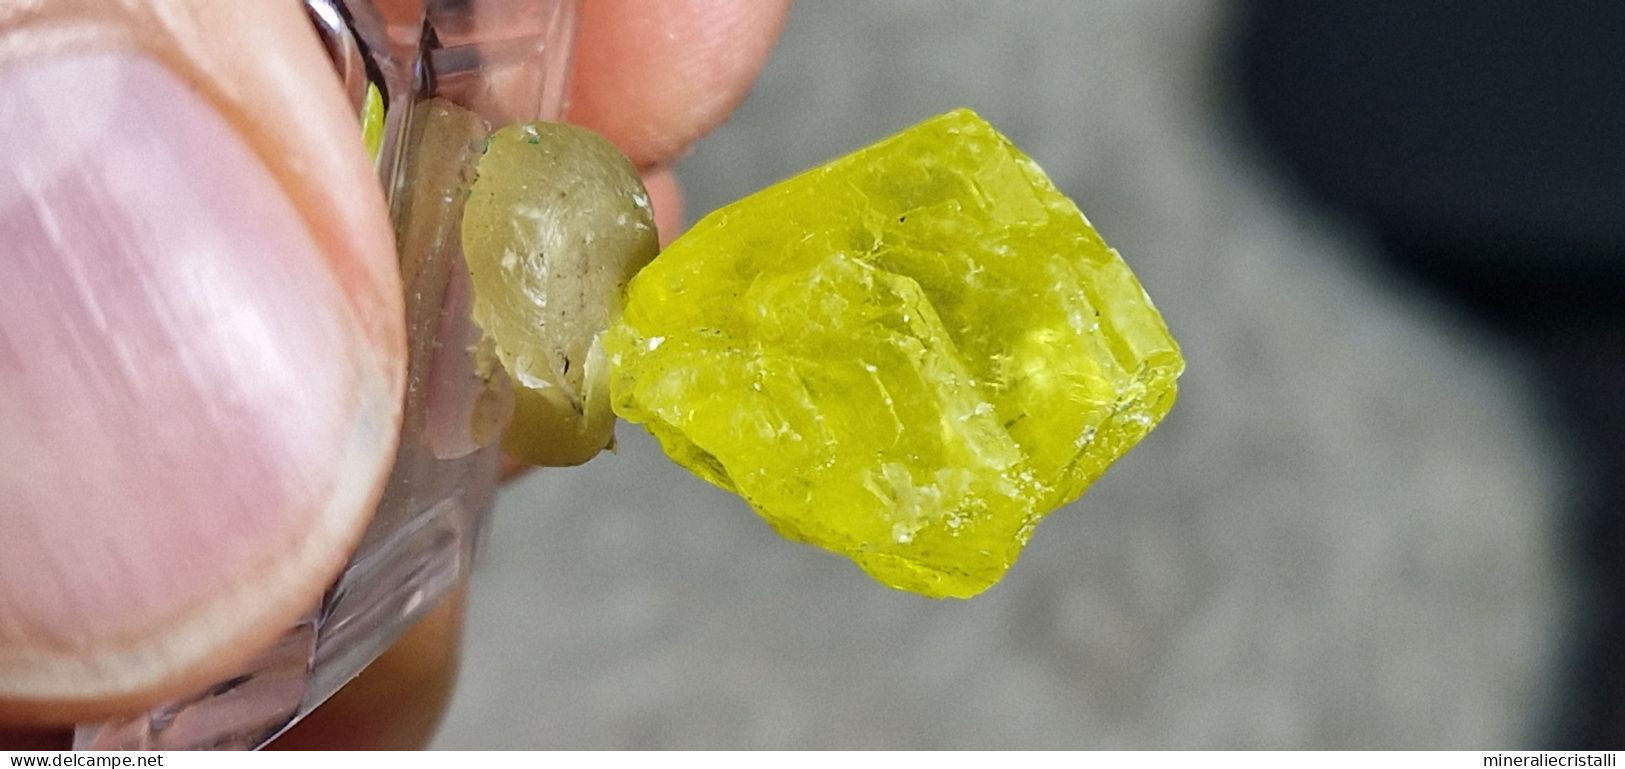 Zolfo cristallo singolo gemma Sicilia cozzodisi 3,18 gr